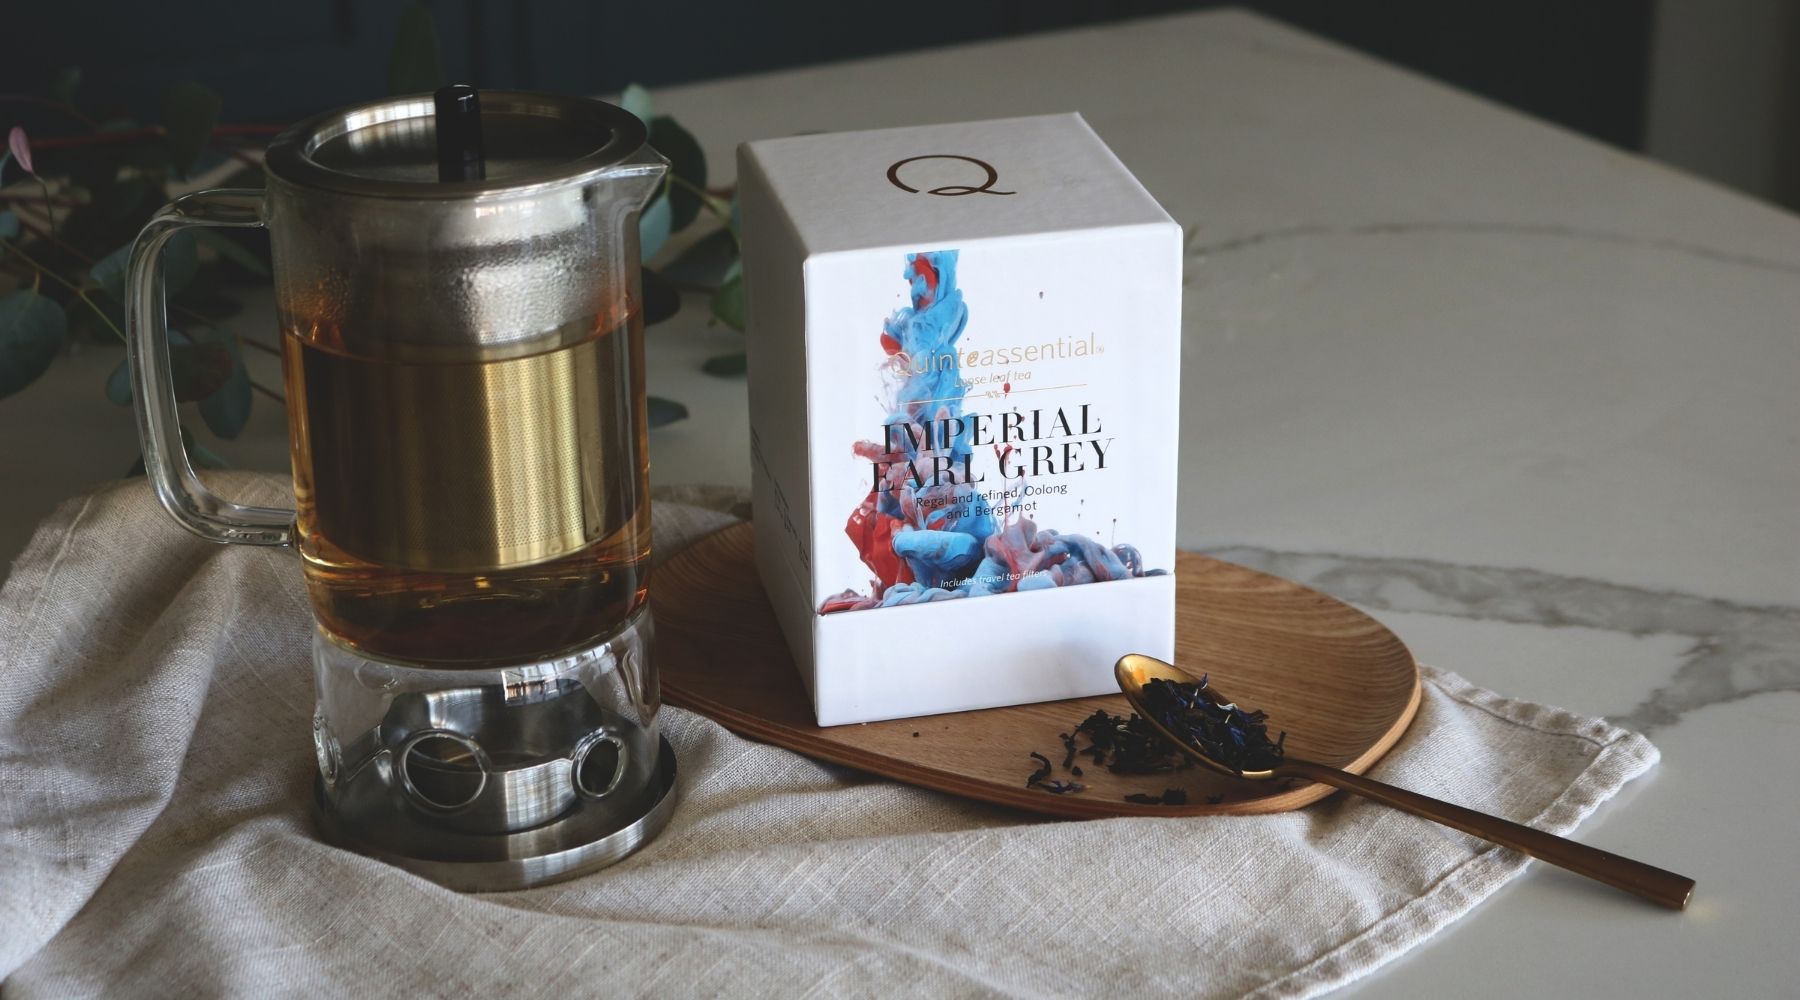 Imperial Earl Grey Best Earl Grey Tea